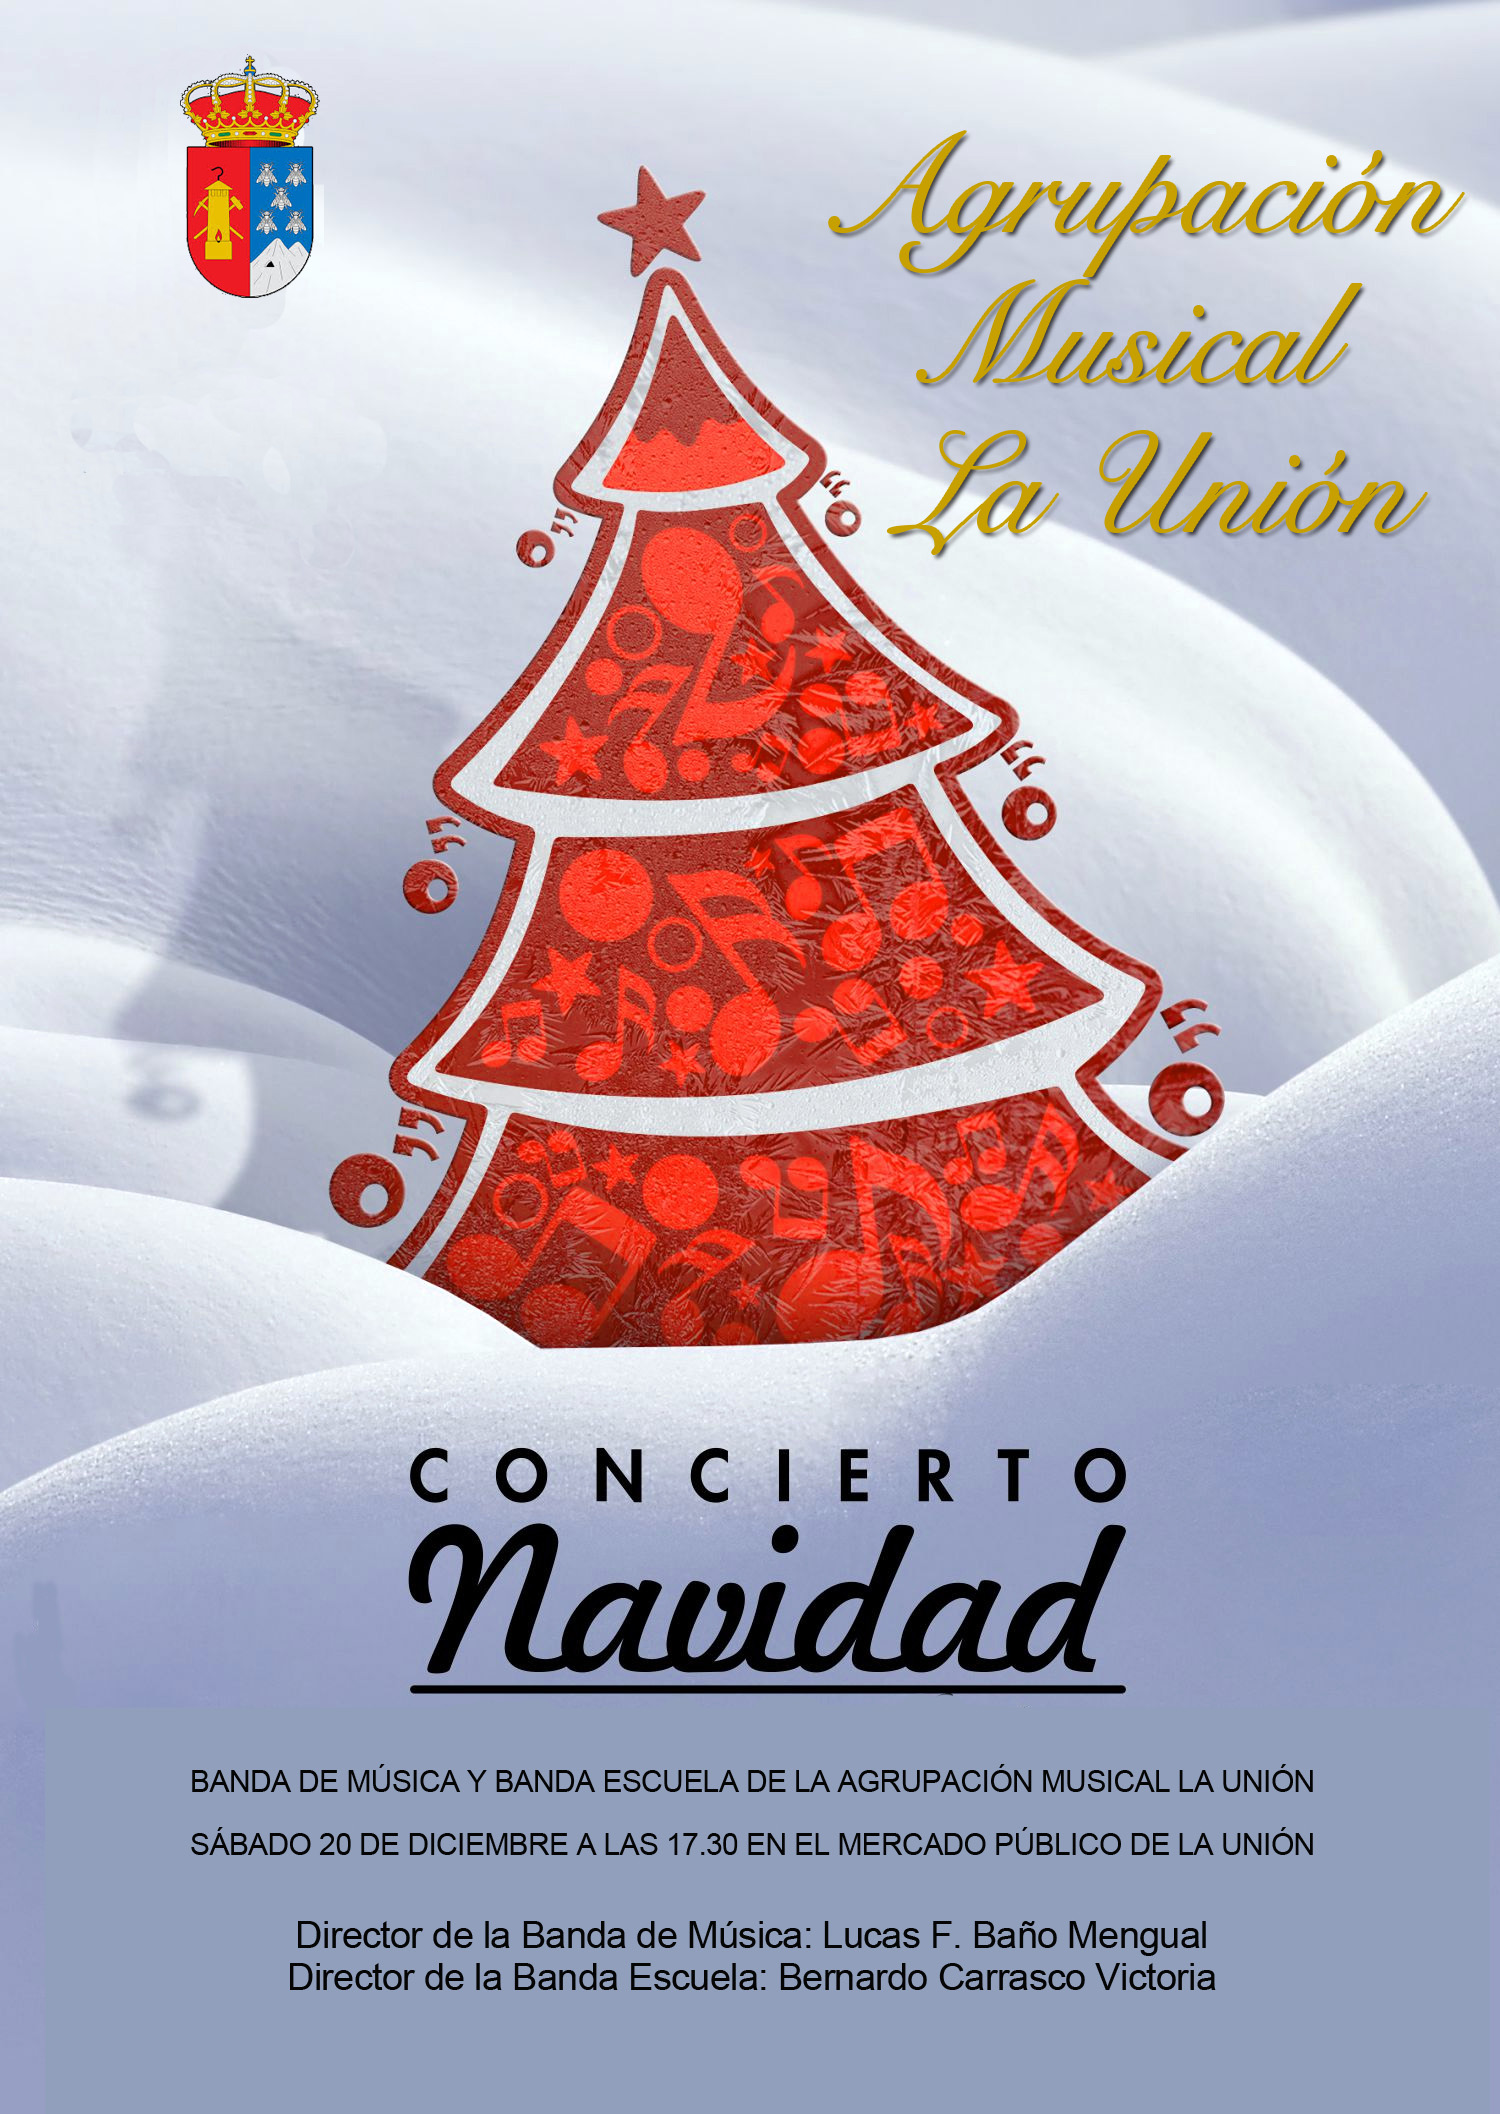 Cartel Concierto de navidad de la Agrupación Musical 2014